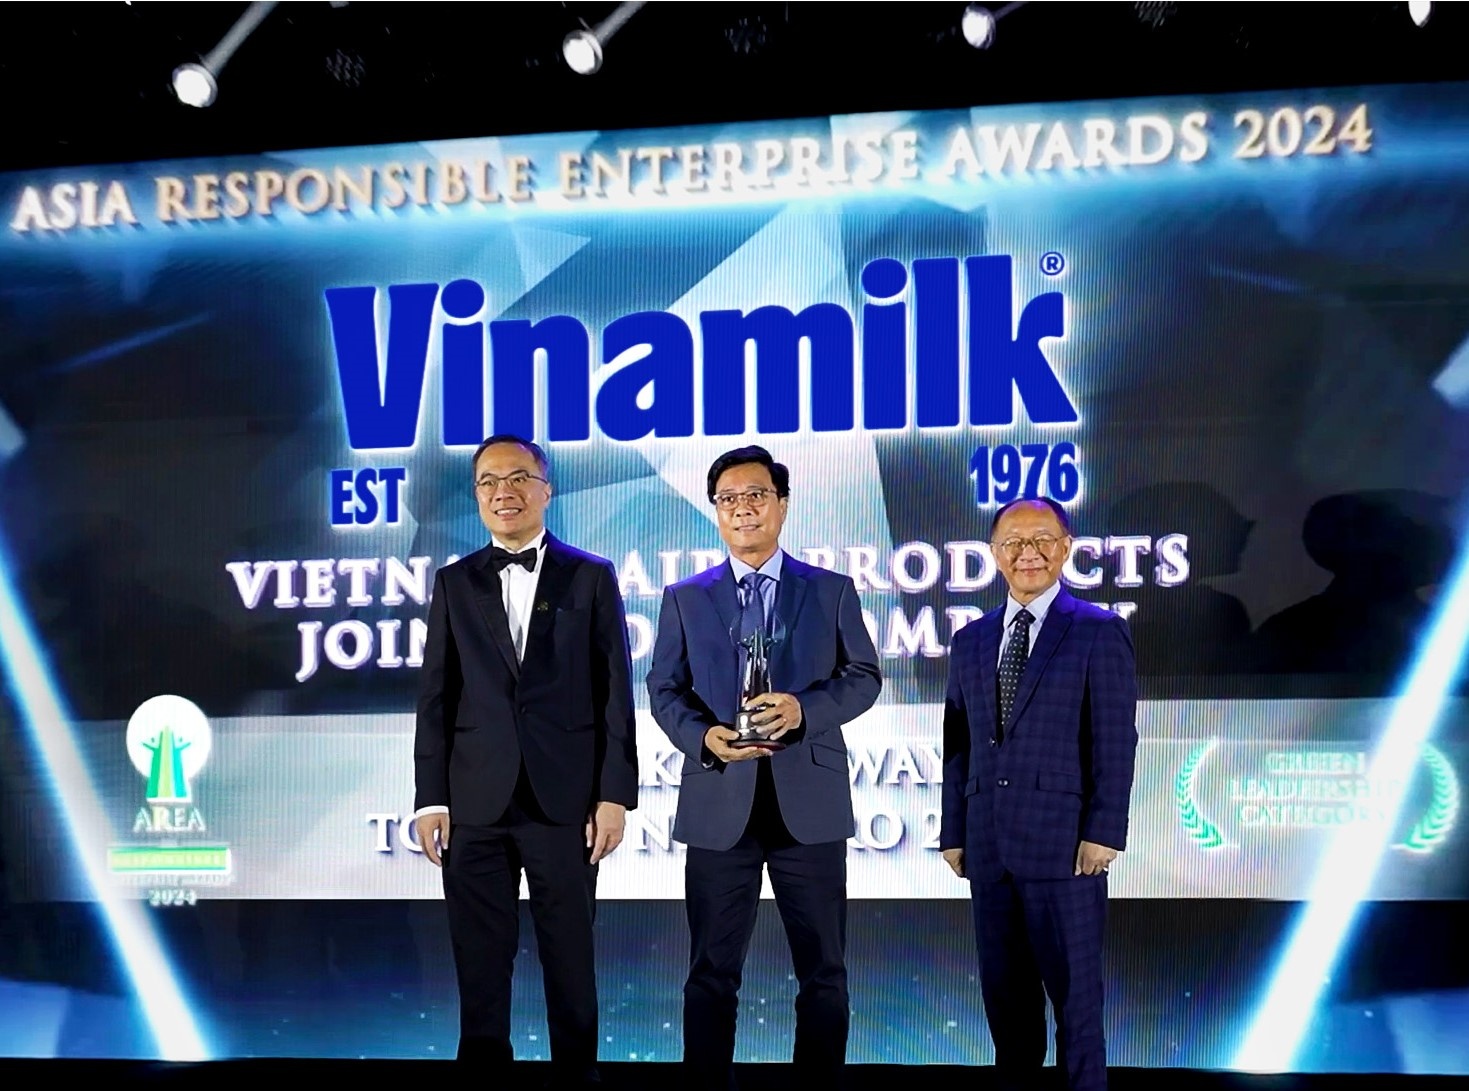 Đại diện Vinamilk nhận giải thưởng tại hạng mục “Green Leadership” - Doanh nghiệp Trách nhiệm Châu Á (AREA) 2024.